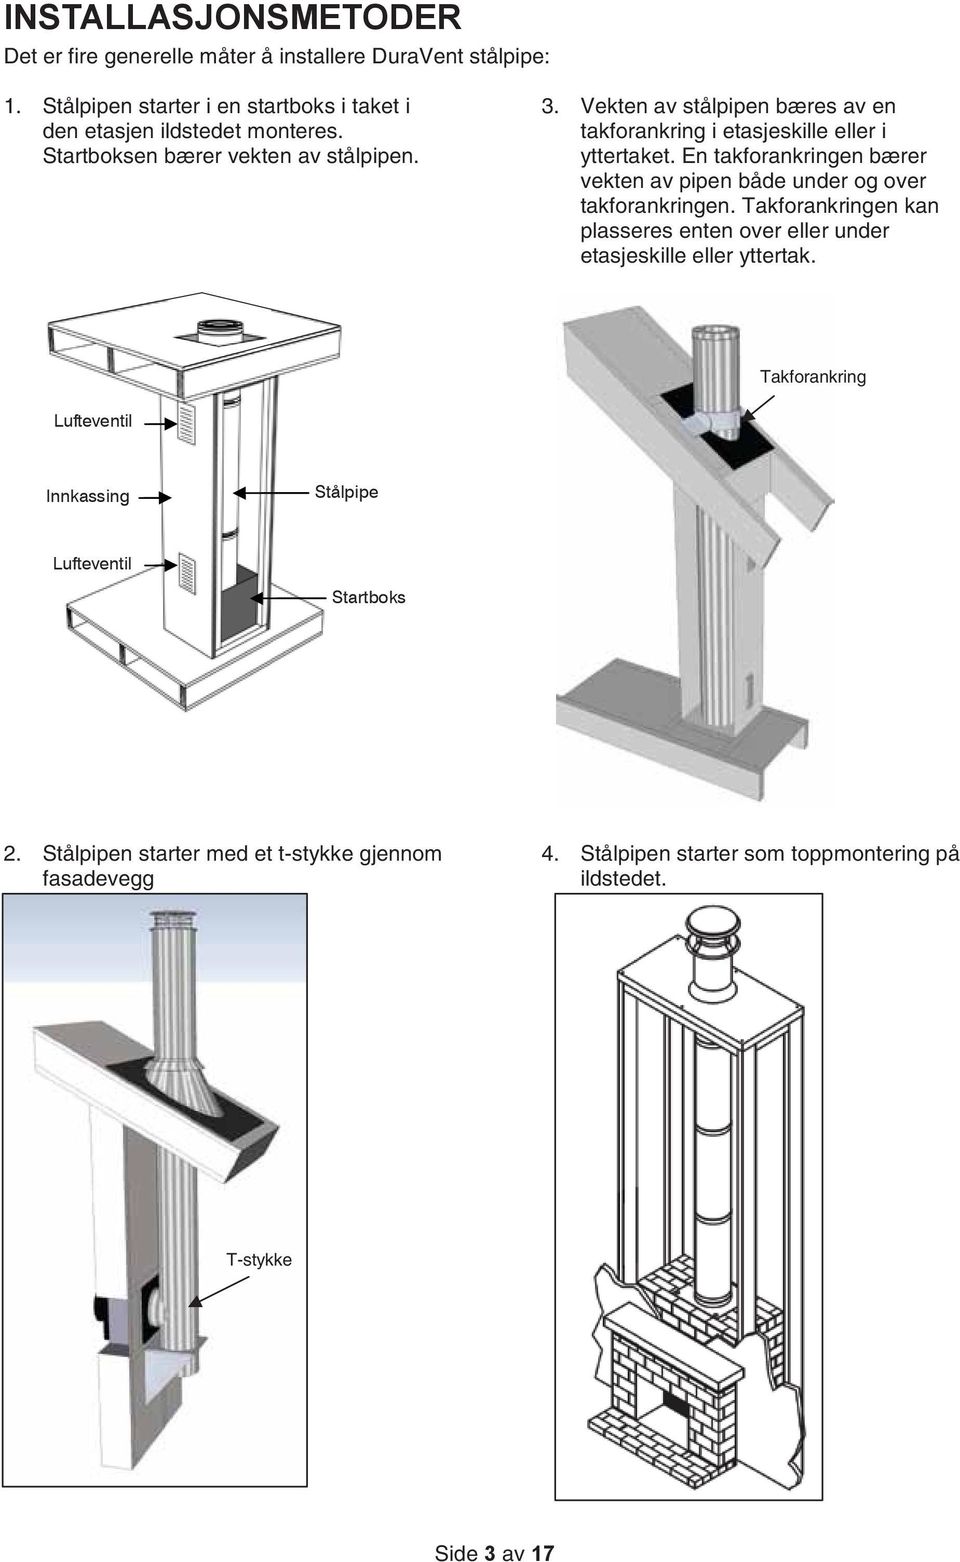 En takforankringen bærer vekten av pipen både under og over takforankringen. Takforankringen kan plasseres enten over eller under etasjeskille eller yttertak.